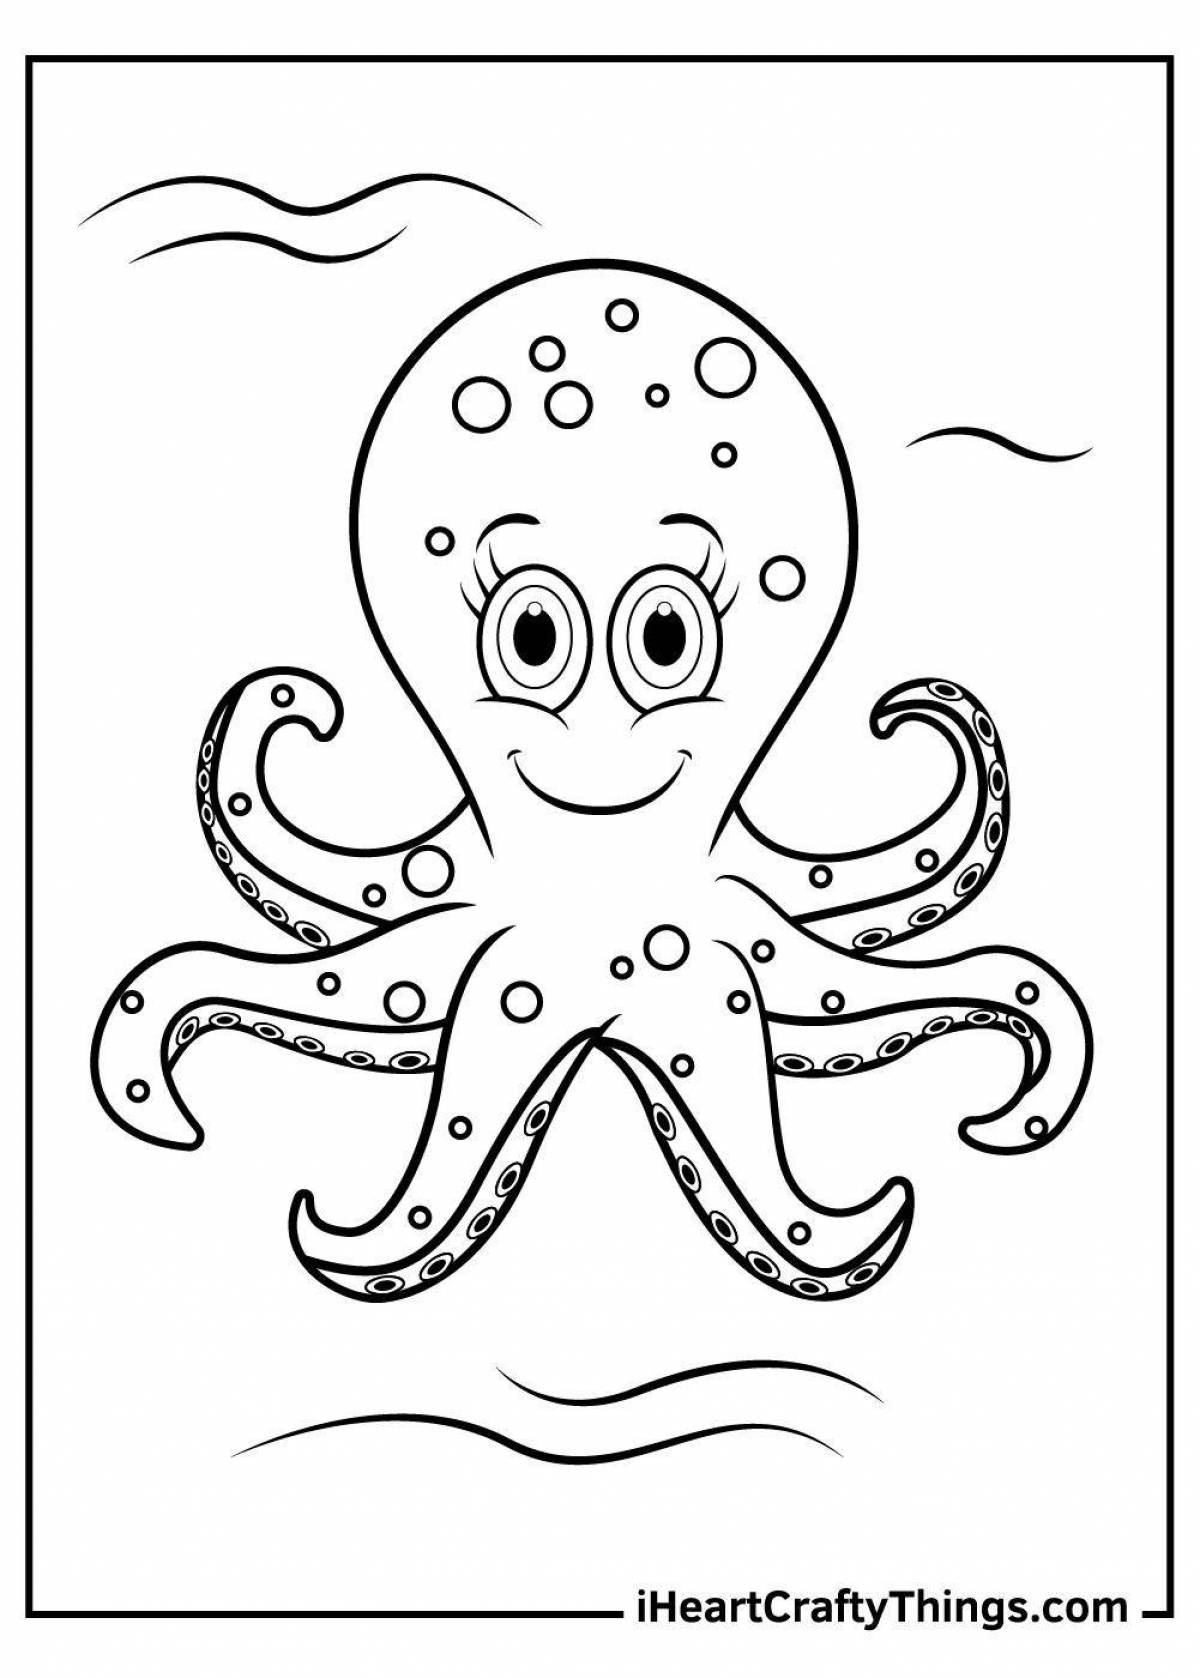 Яркая раскраска осьминога для малышей